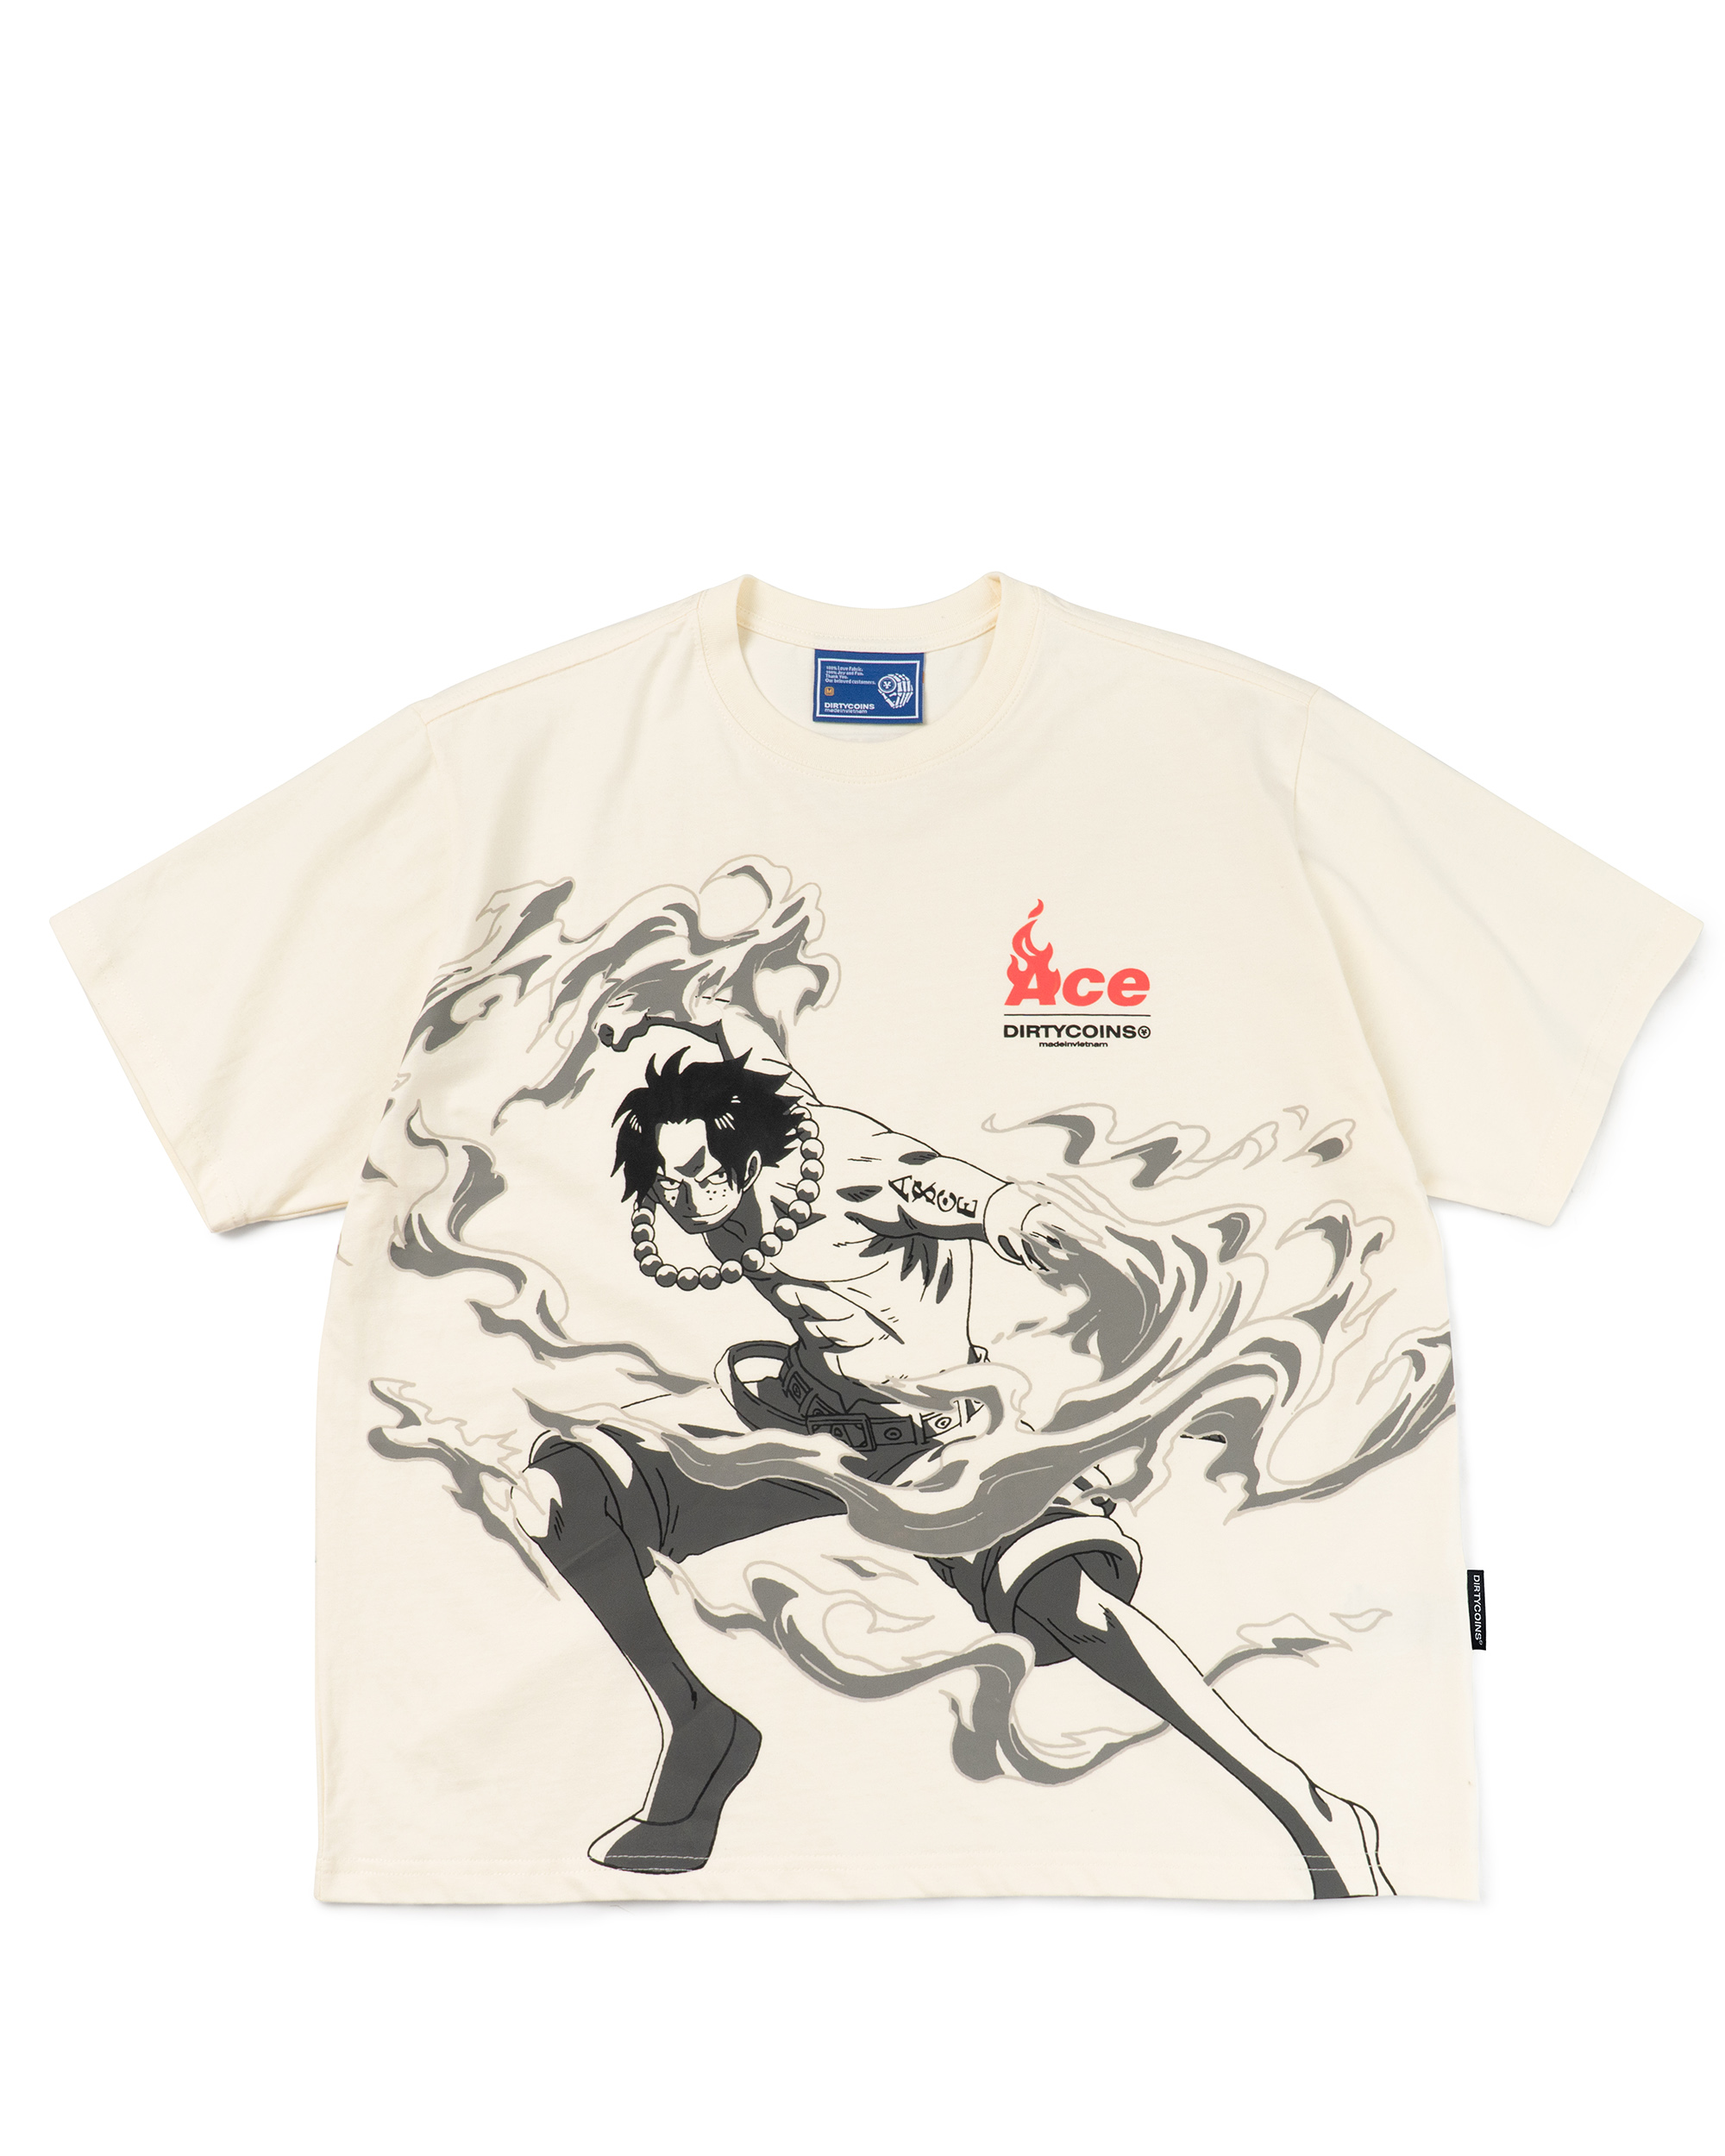 DC x OP Ace T-shirt - Cream